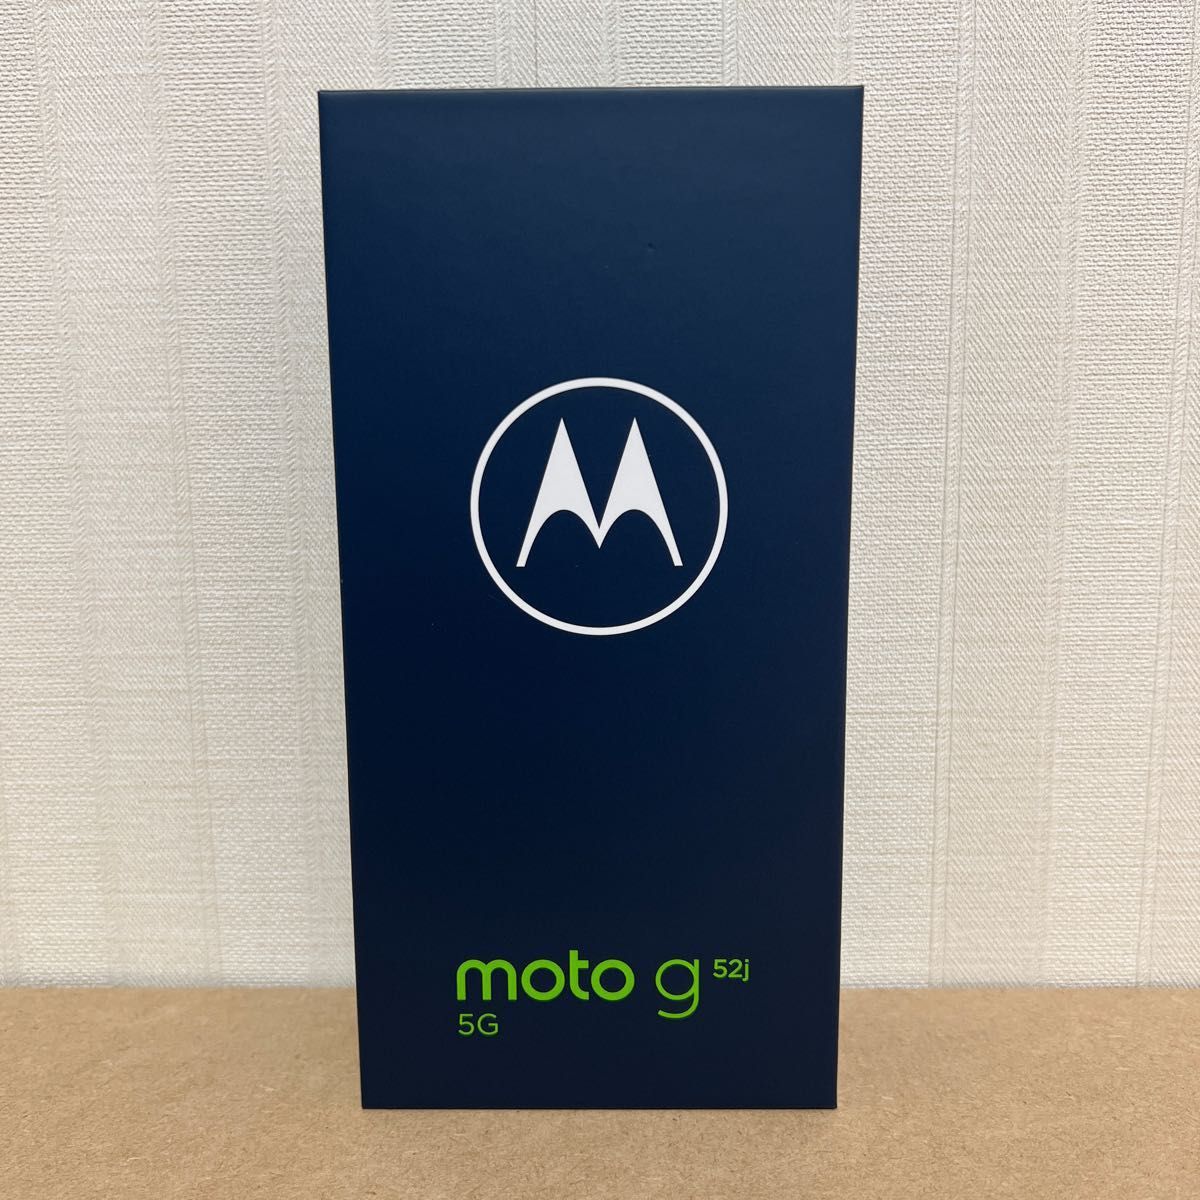 【新品・未開封】Motorola moto g52j 5G パールホワイト 国内版SIMフリー